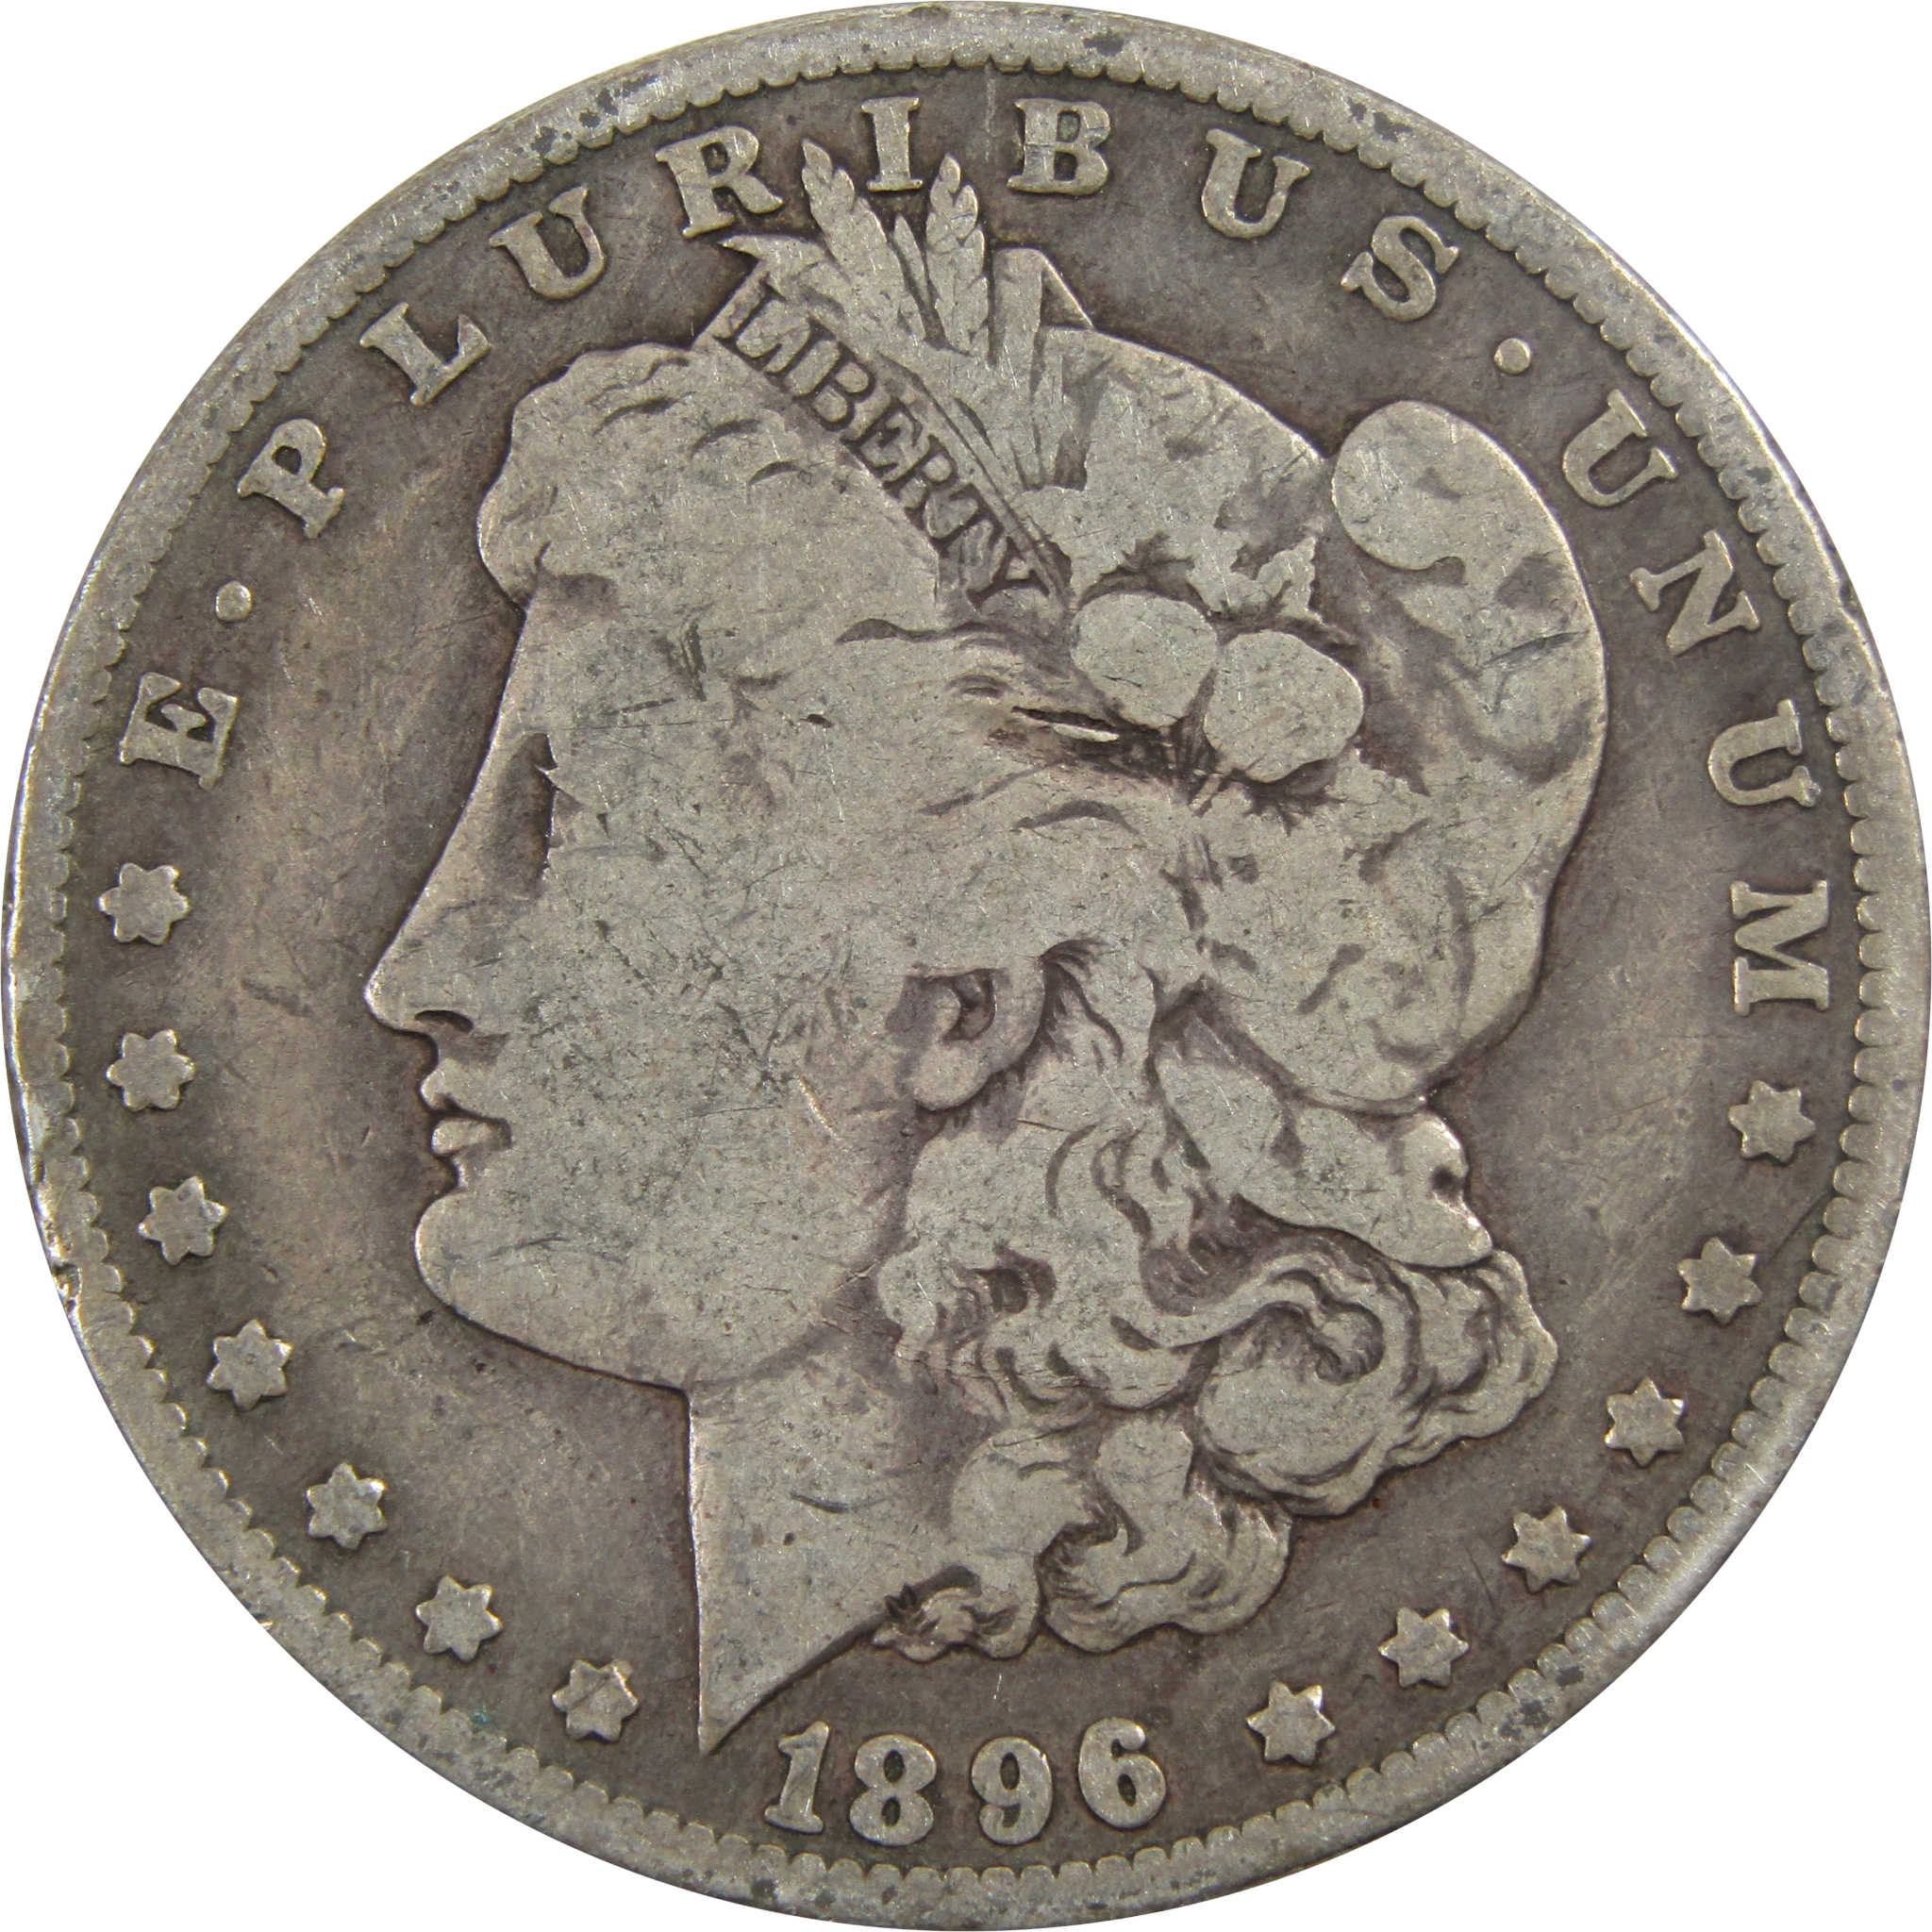 1896 O Morgan Dollar VG Very Good 90% Silver $1 Coin SKU:I5573 - Morgan coin - Morgan silver dollar - Morgan silver dollar for sale - Profile Coins &amp; Collectibles